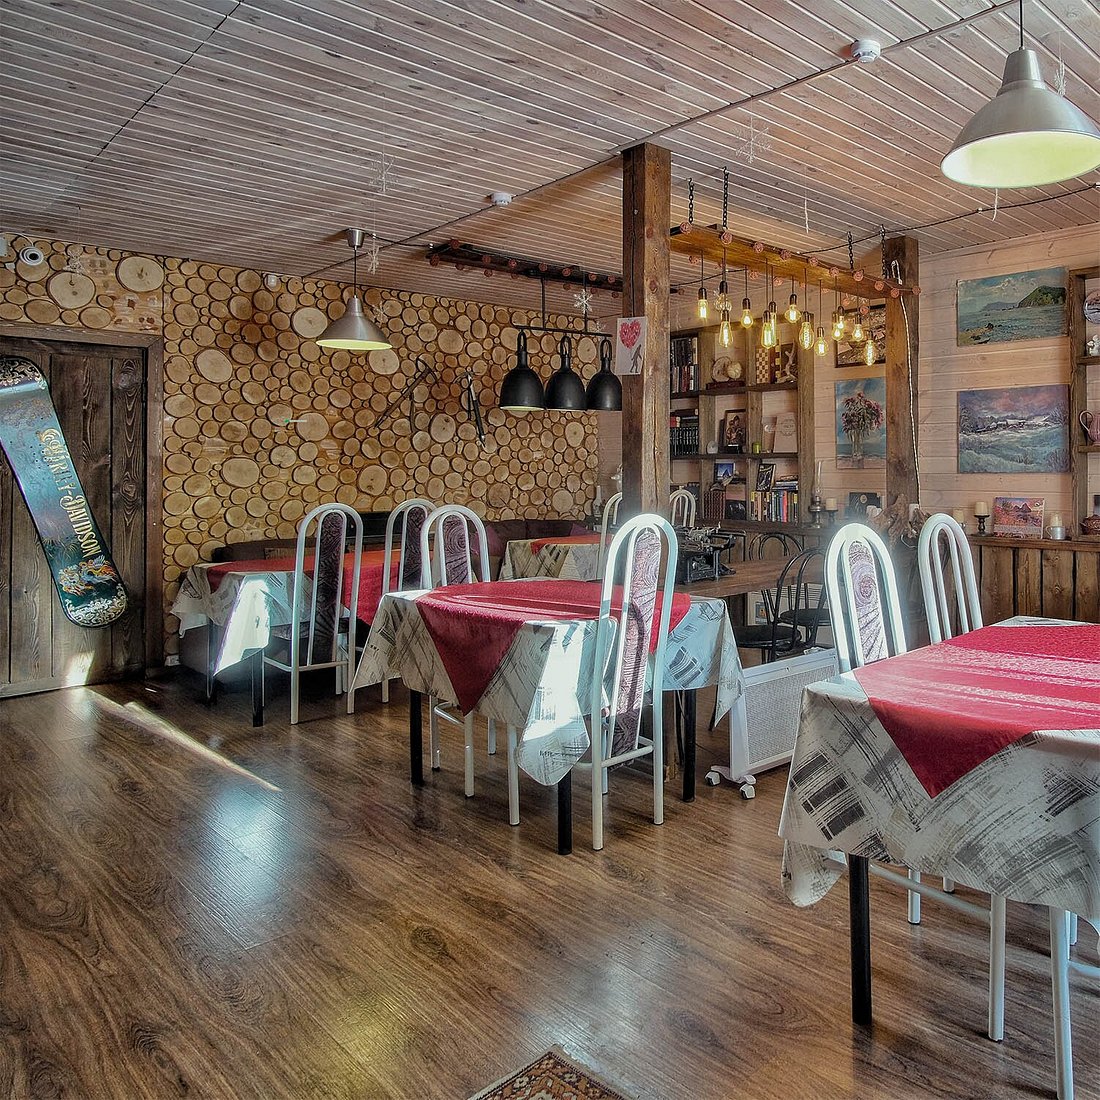 Things To Do in Baikalsky Plyos, Restaurants in Baikalsky Plyos